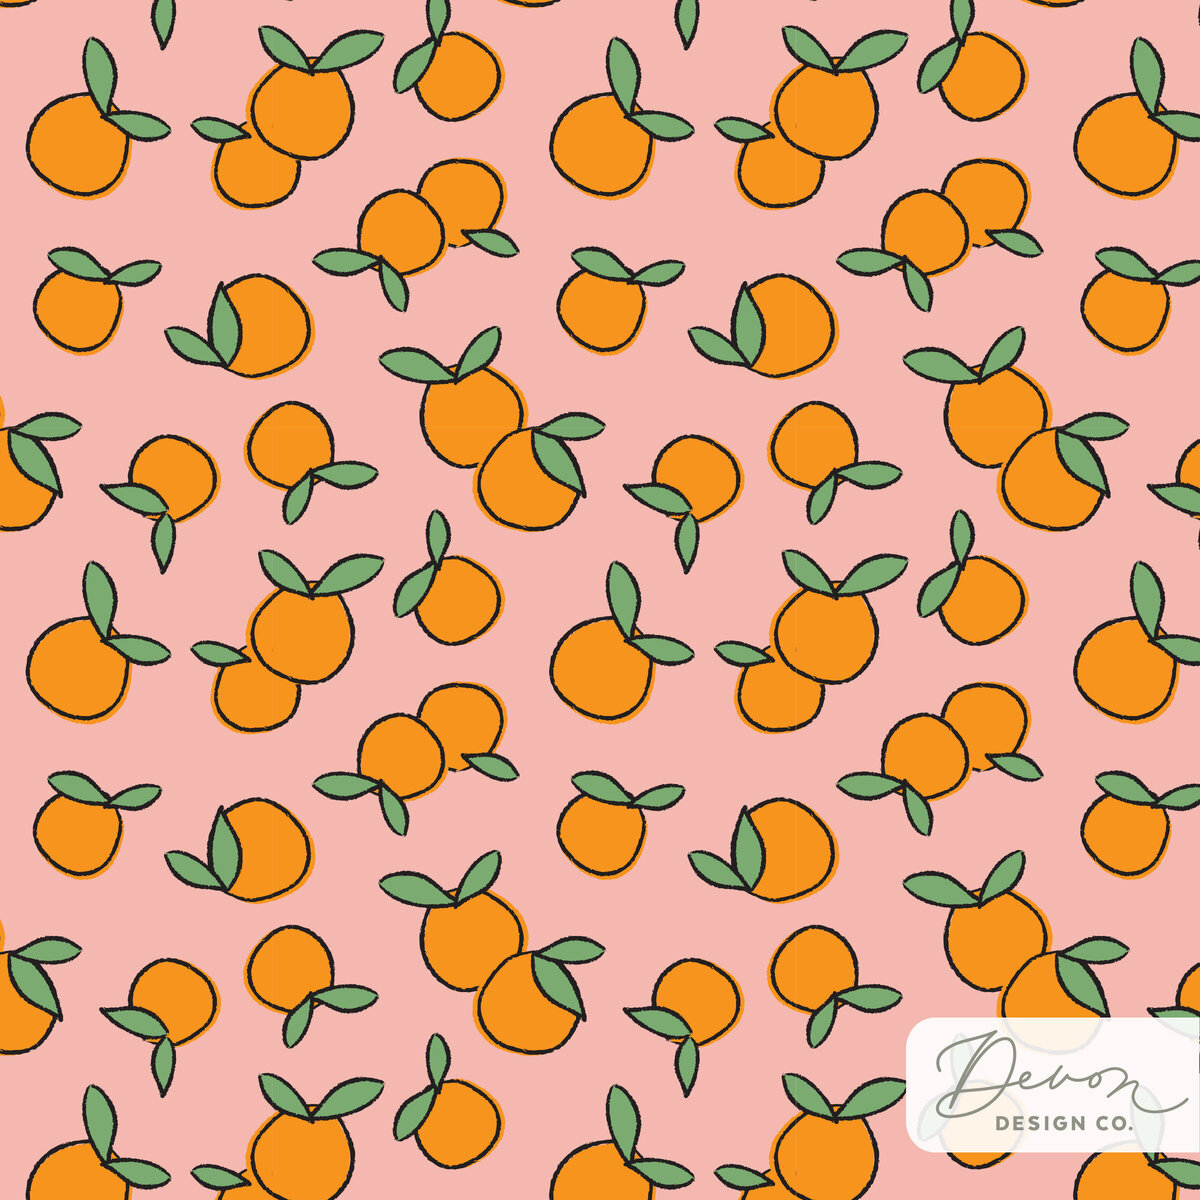 Devon-Design-Co_Clementine-Pattern